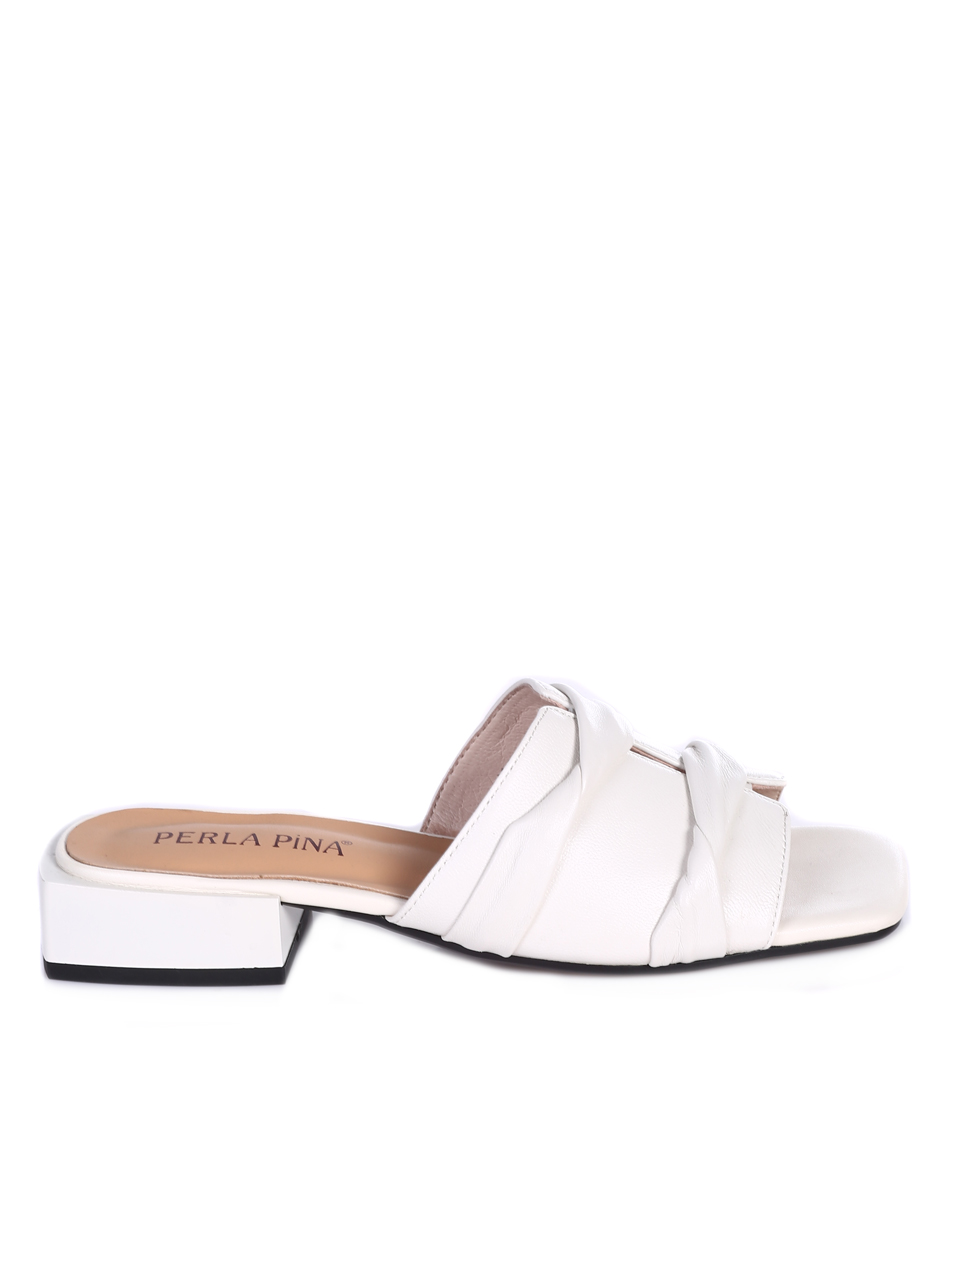 Eжедневни дамски чехли от естествена кожа  в бяло T27-2 white S